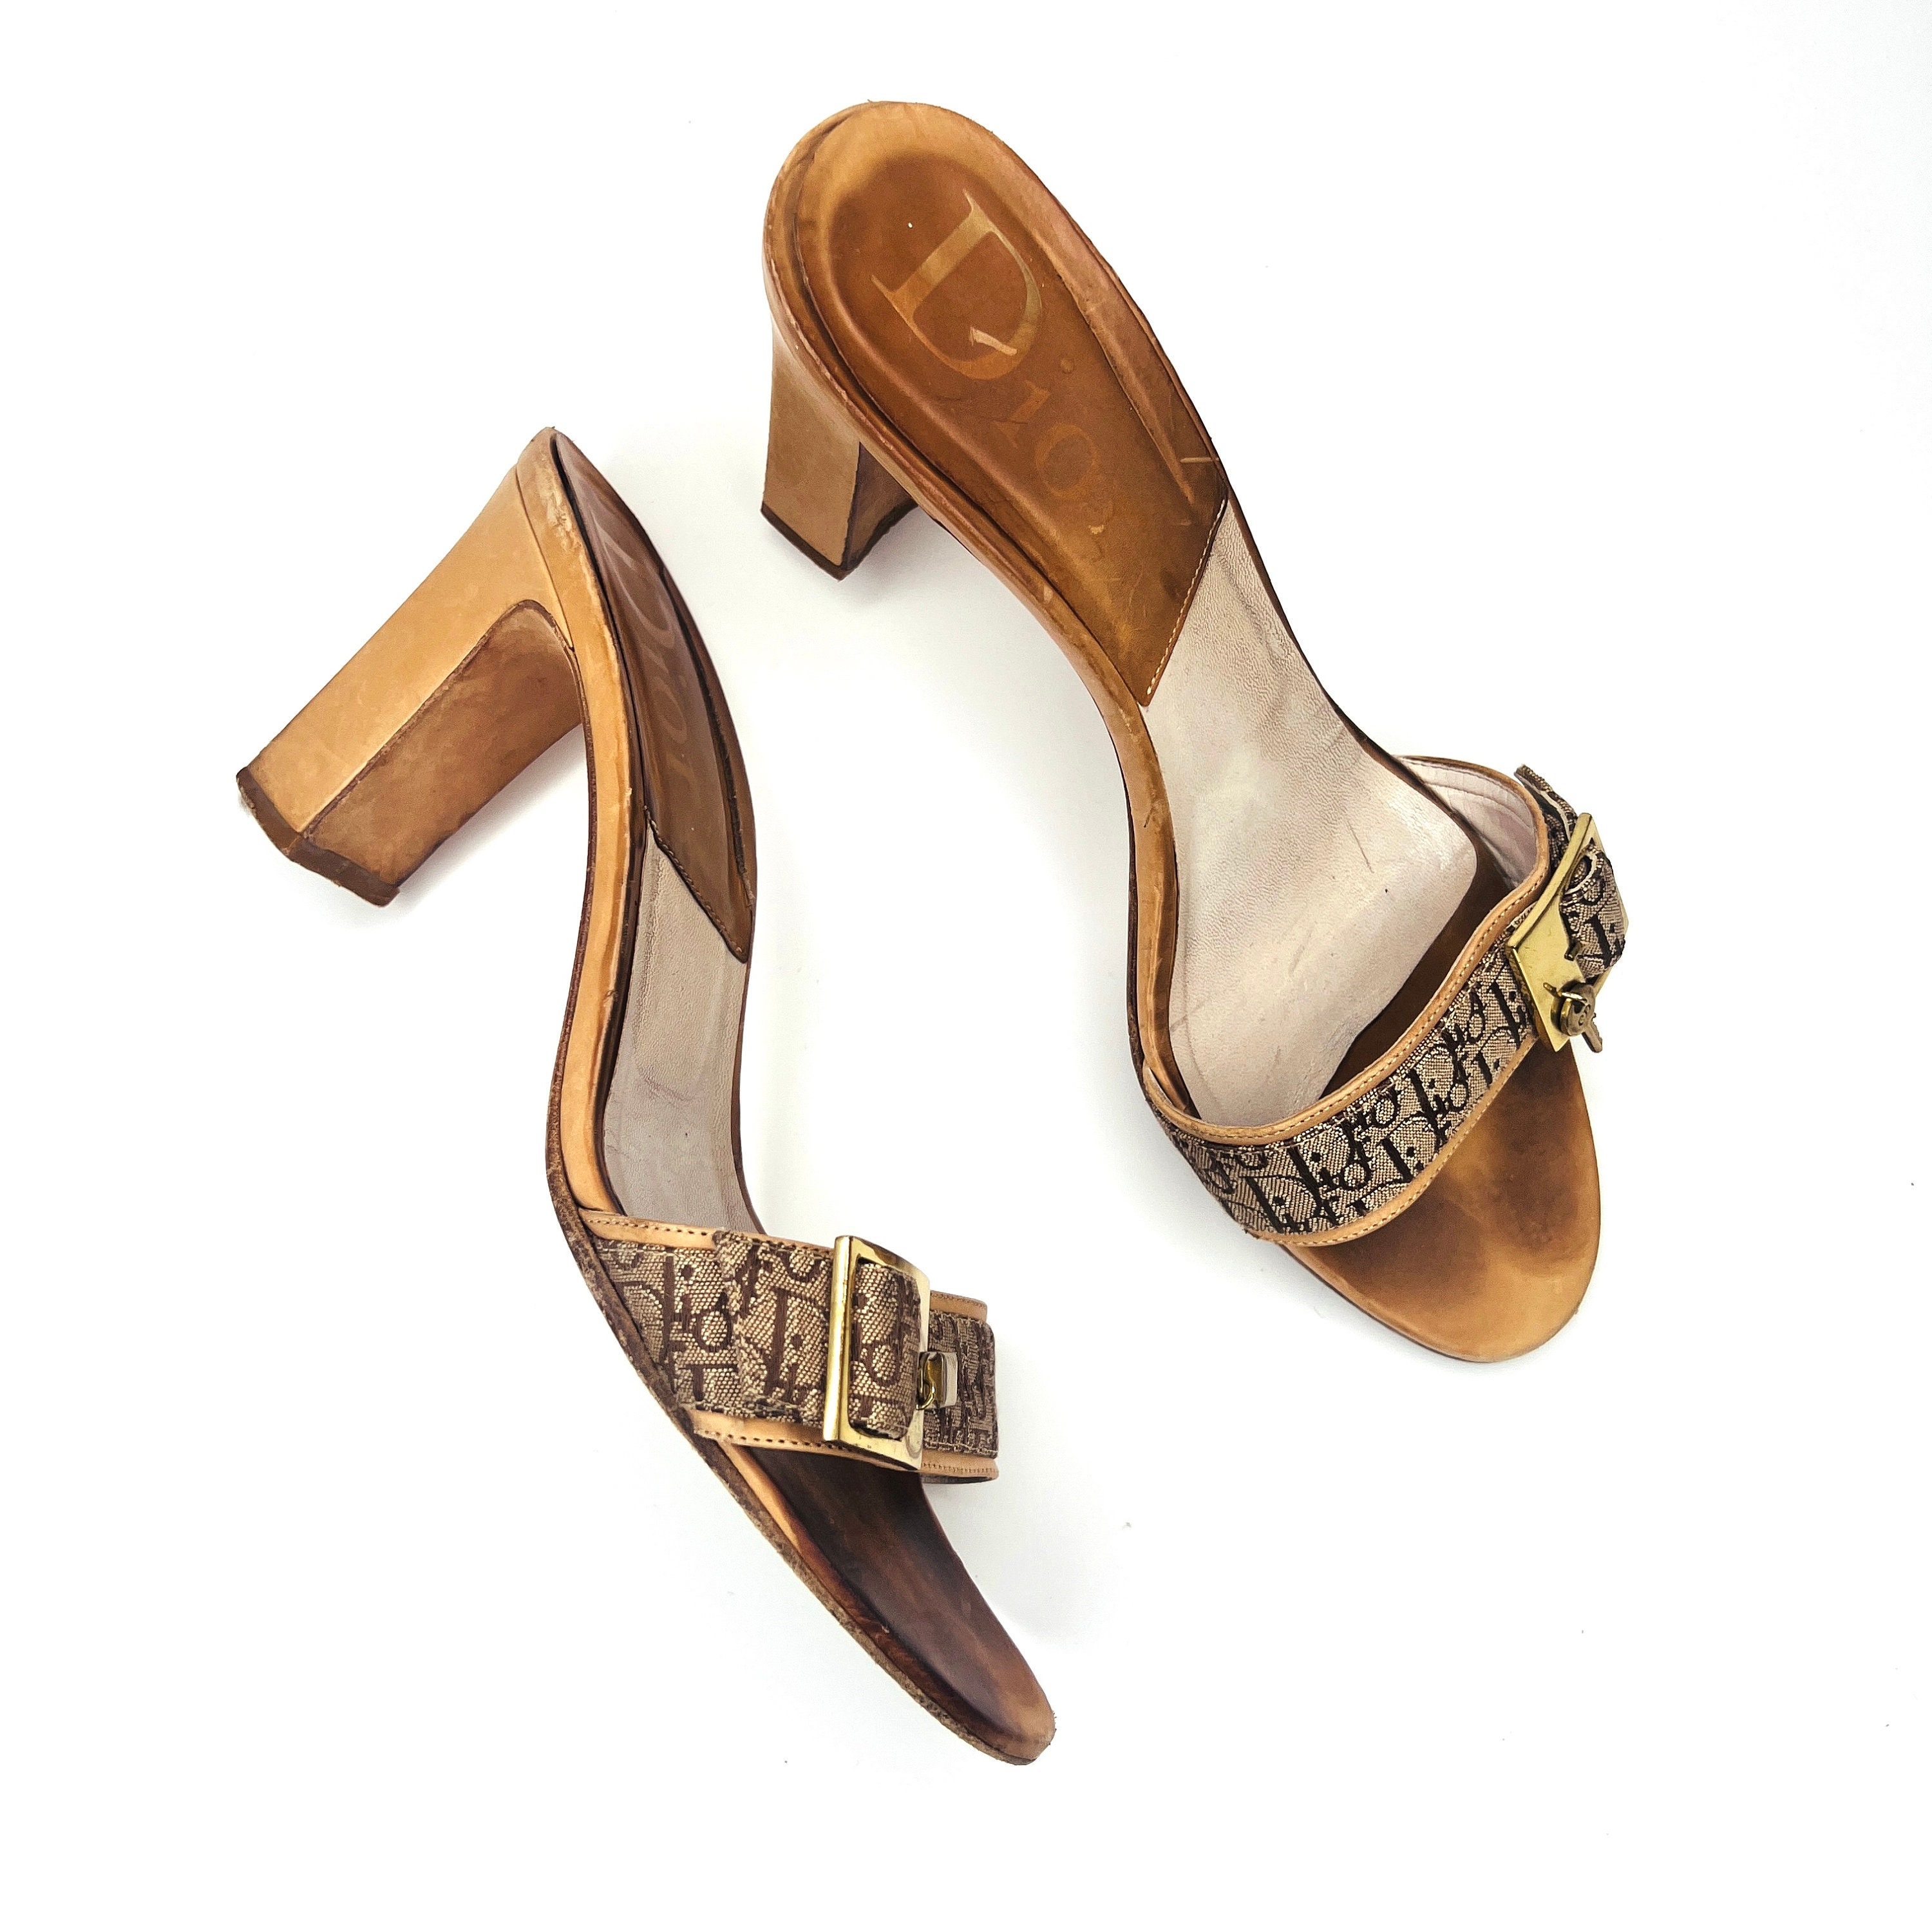 CHRISTIAN DIOR Cognac Lederen String Sandalen Gemarkeerd als 37.5 7.5US Schoenen damesschoenen Sandalen Slippers & Teenslippers 